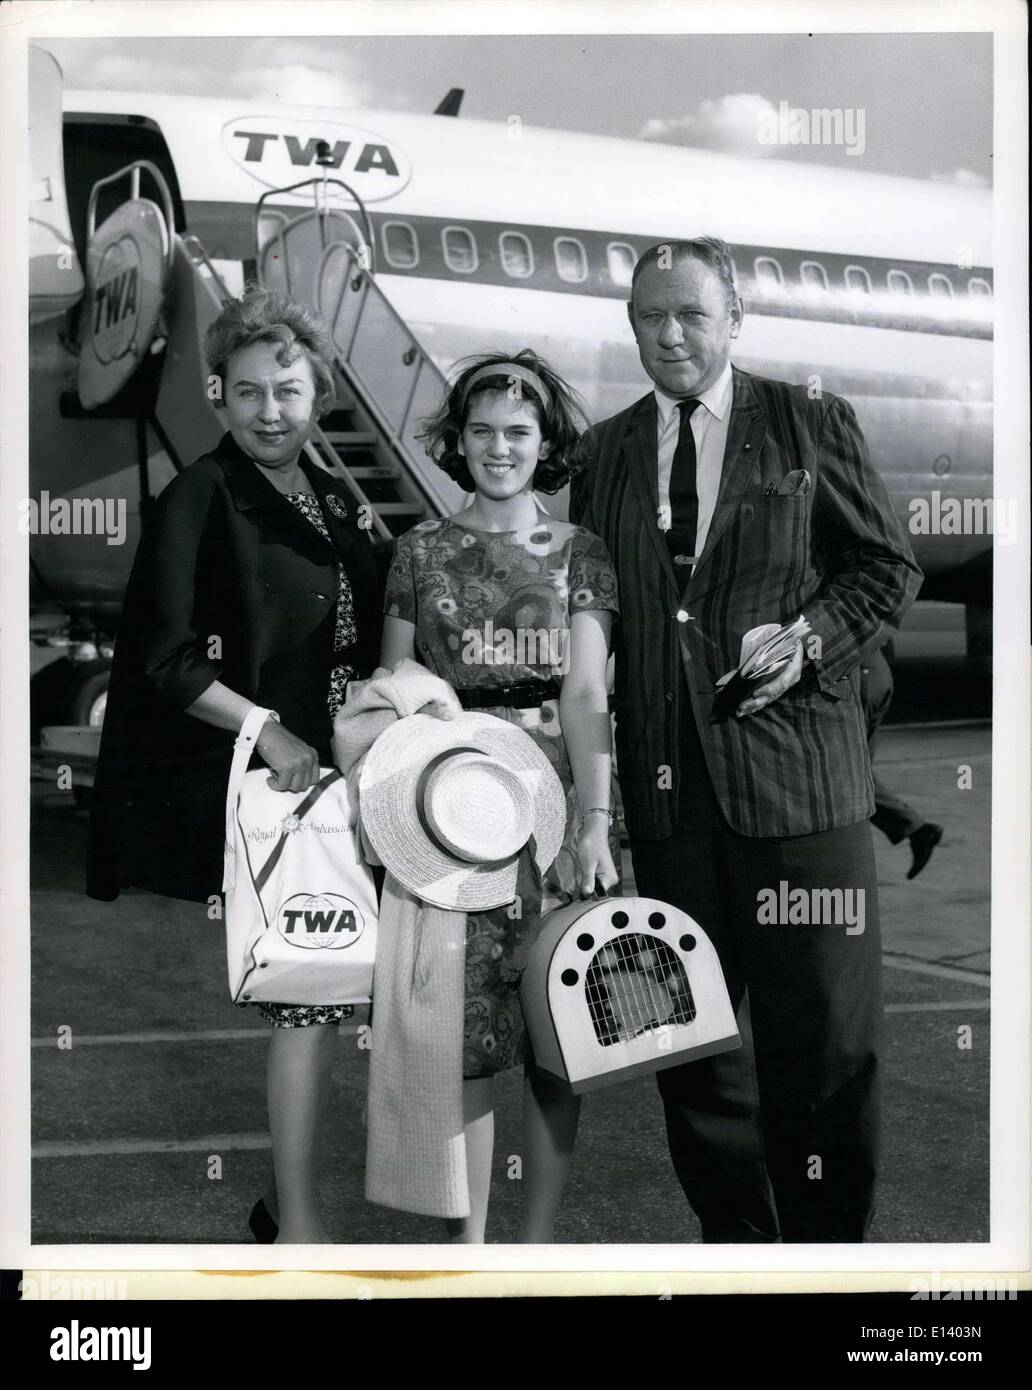 31 mars 2012 - Pour diffusion immédiate : l'Aéroport International de New York, le 30 juillet 1962. Bob Considine, noté écrivain, illustré avec sa femme et sa fille, Debbie, 14, tel qu'ils sont arrivés ici via TWA Superjet après une tournée du continent. Banque D'Images